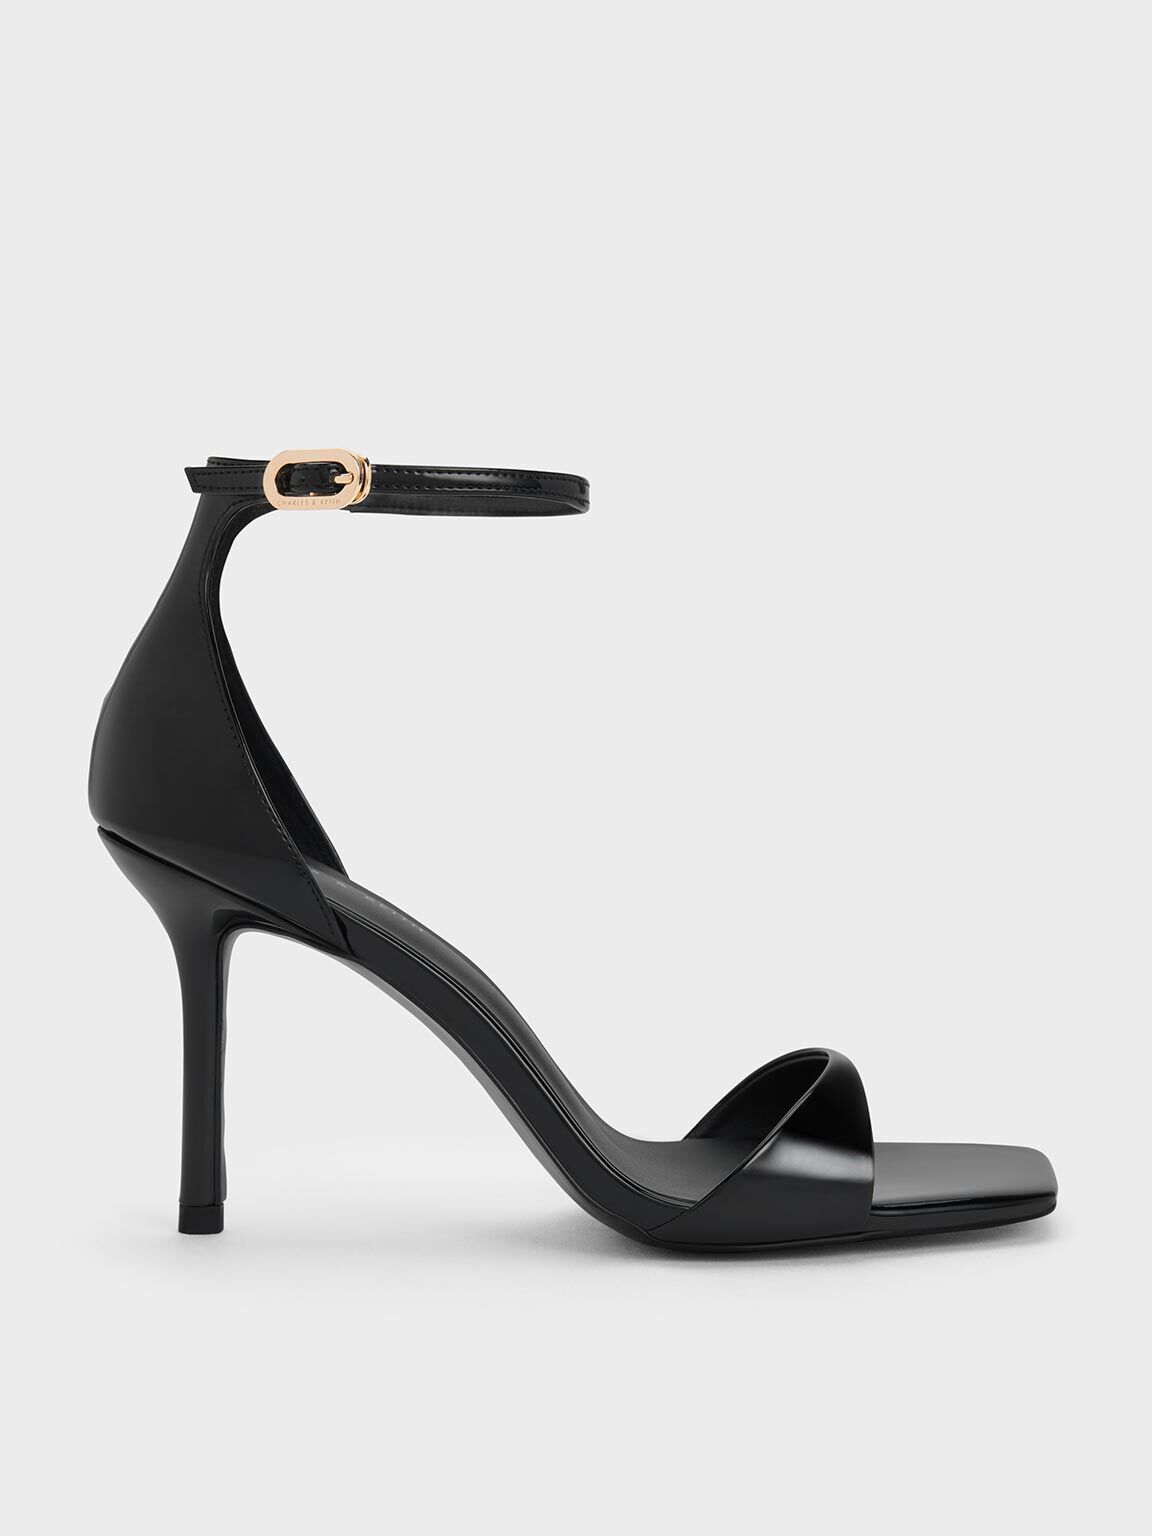 Heels | Women's Heels & High Heel Shoes | Misspap